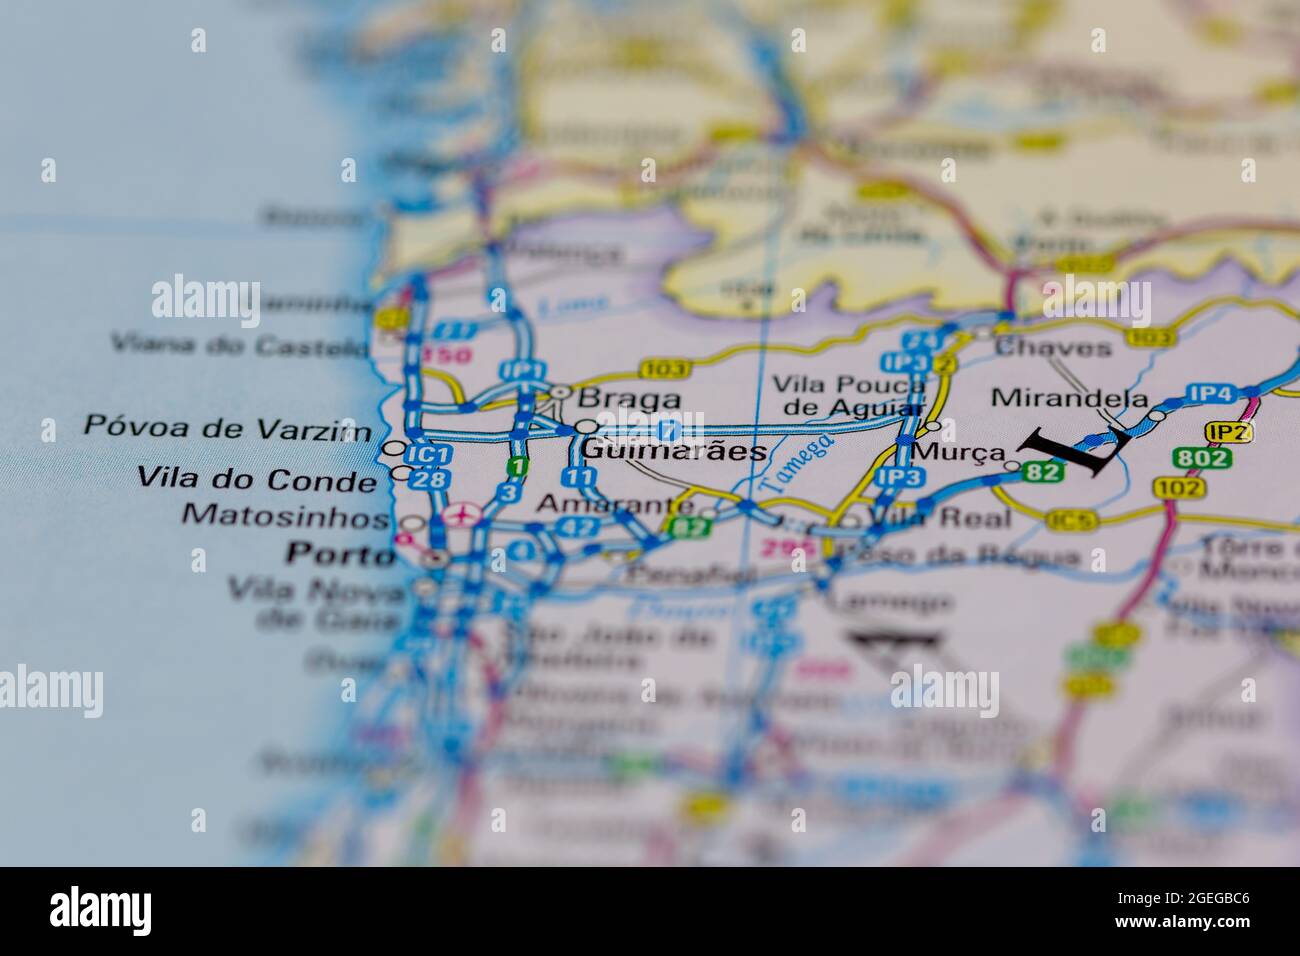 Guimaraes Portugal se muestra en un mapa de carreteras o mapa geográfico Foto de stock